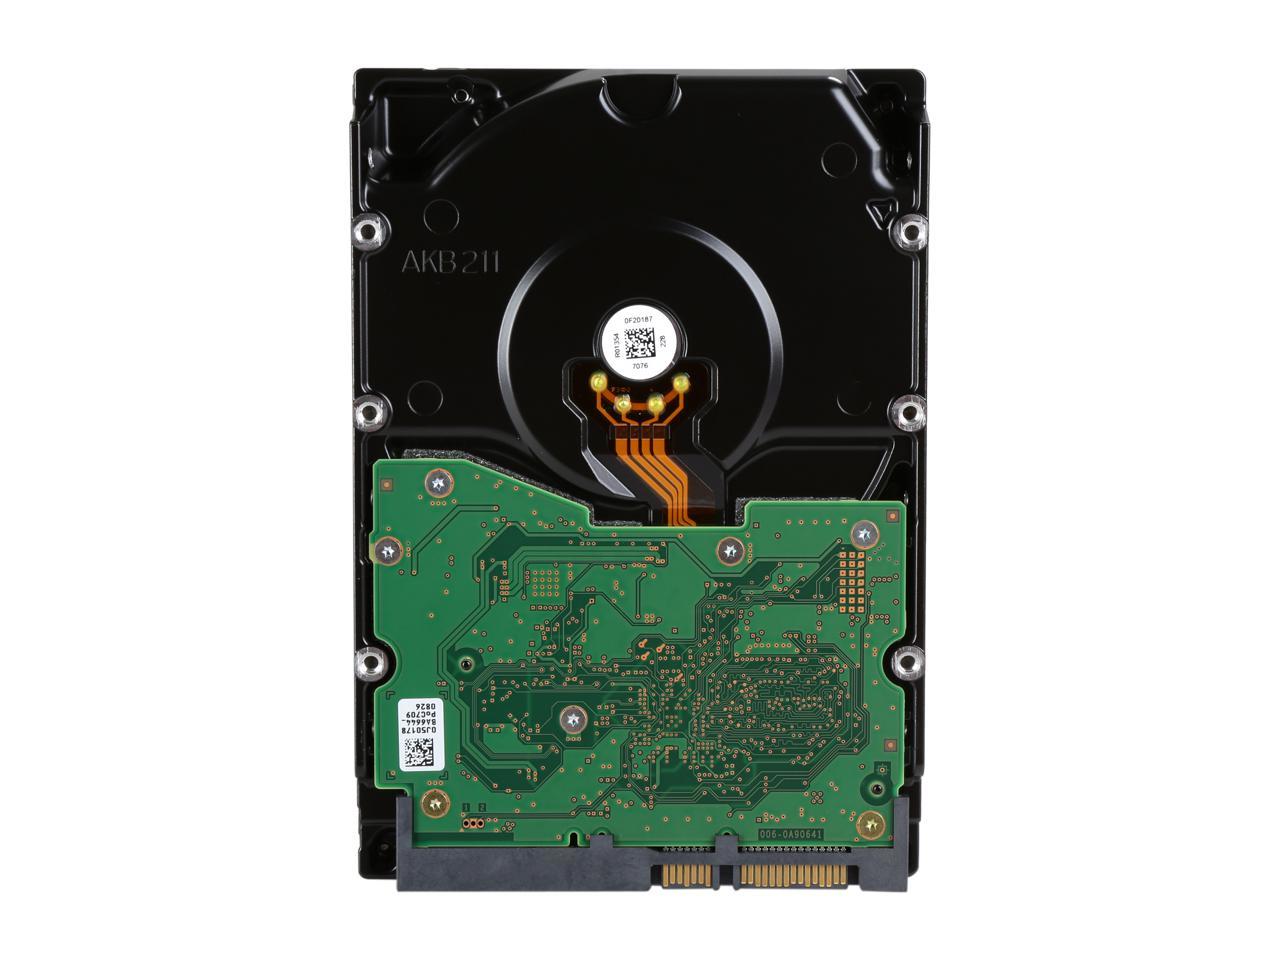 Wd Black 6Tb Performance Desktop Hard Disk Drive - 7200 Rpm Sata 6Gb/S 128Mb Cache 3.5 Inch - Wd6002Fzwx